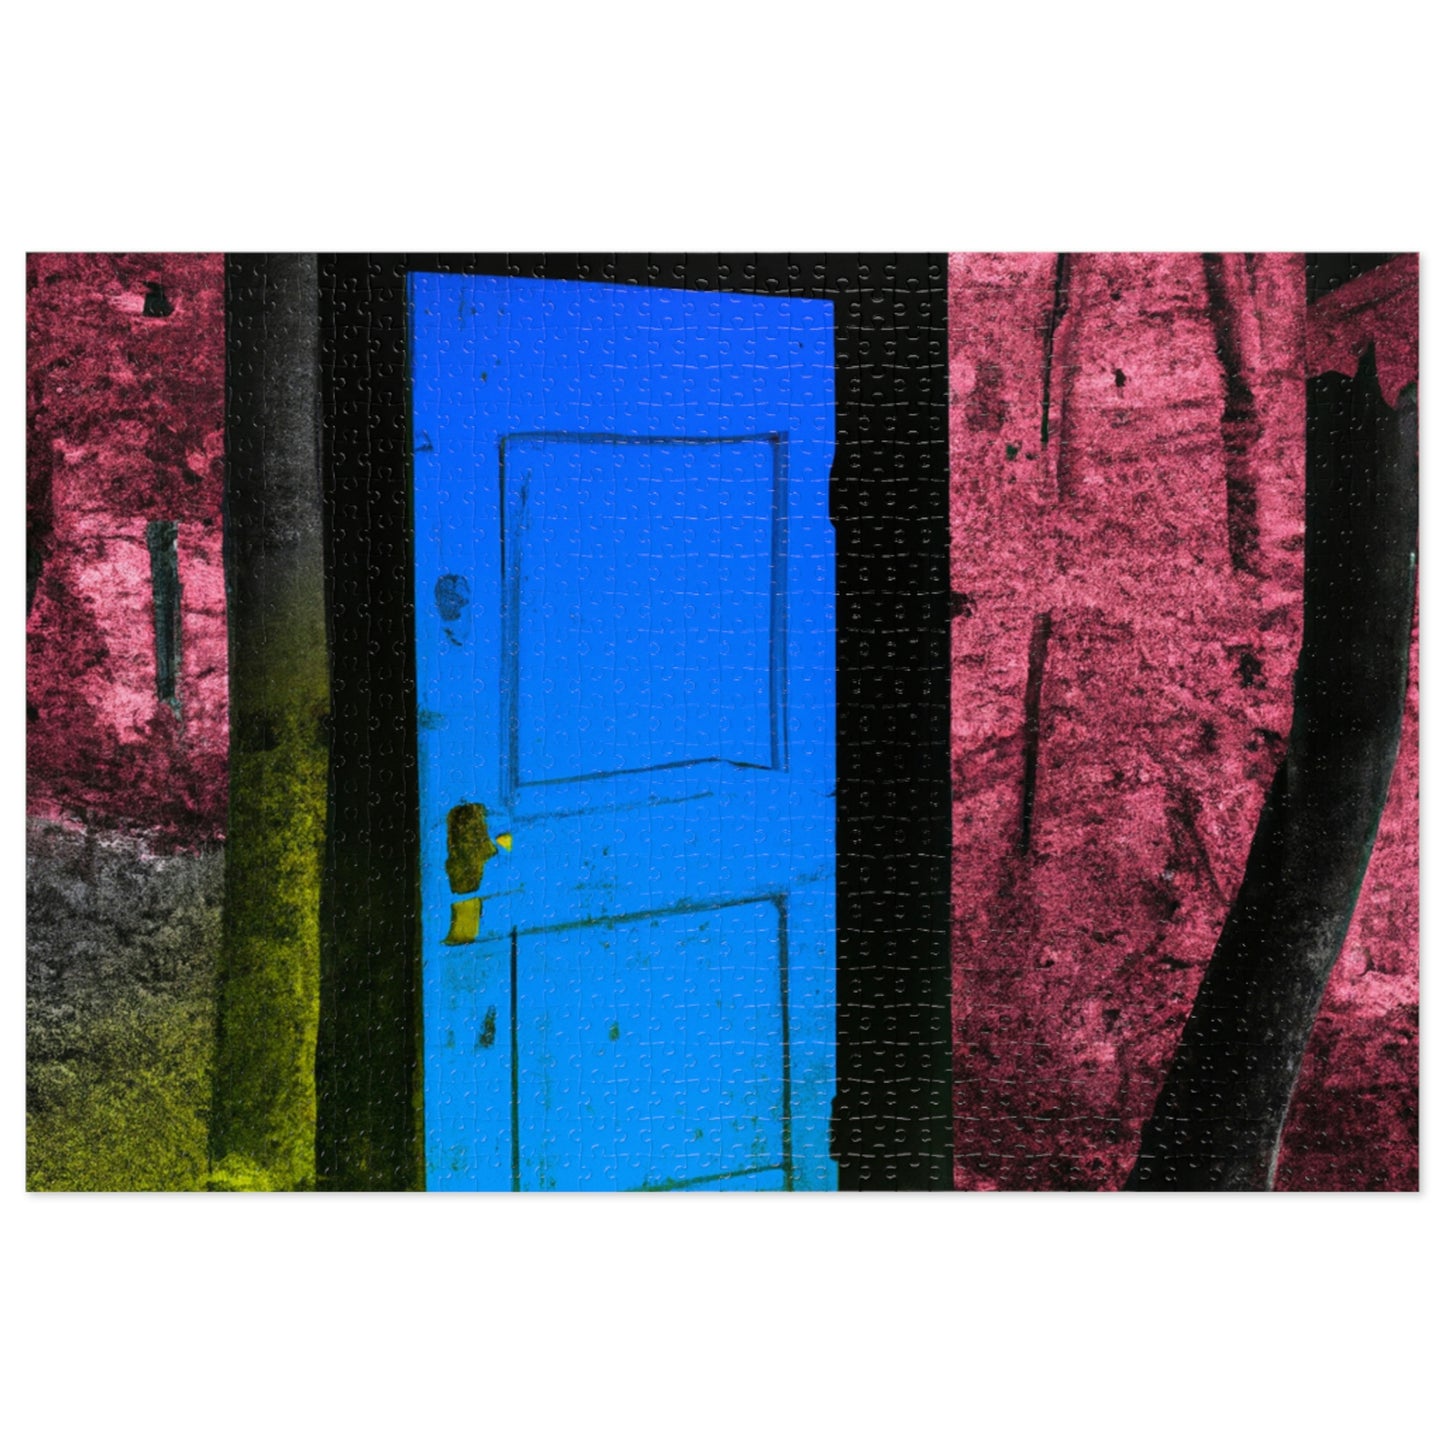 La enigmática puerta del bosque - El rompecabezas alienígena